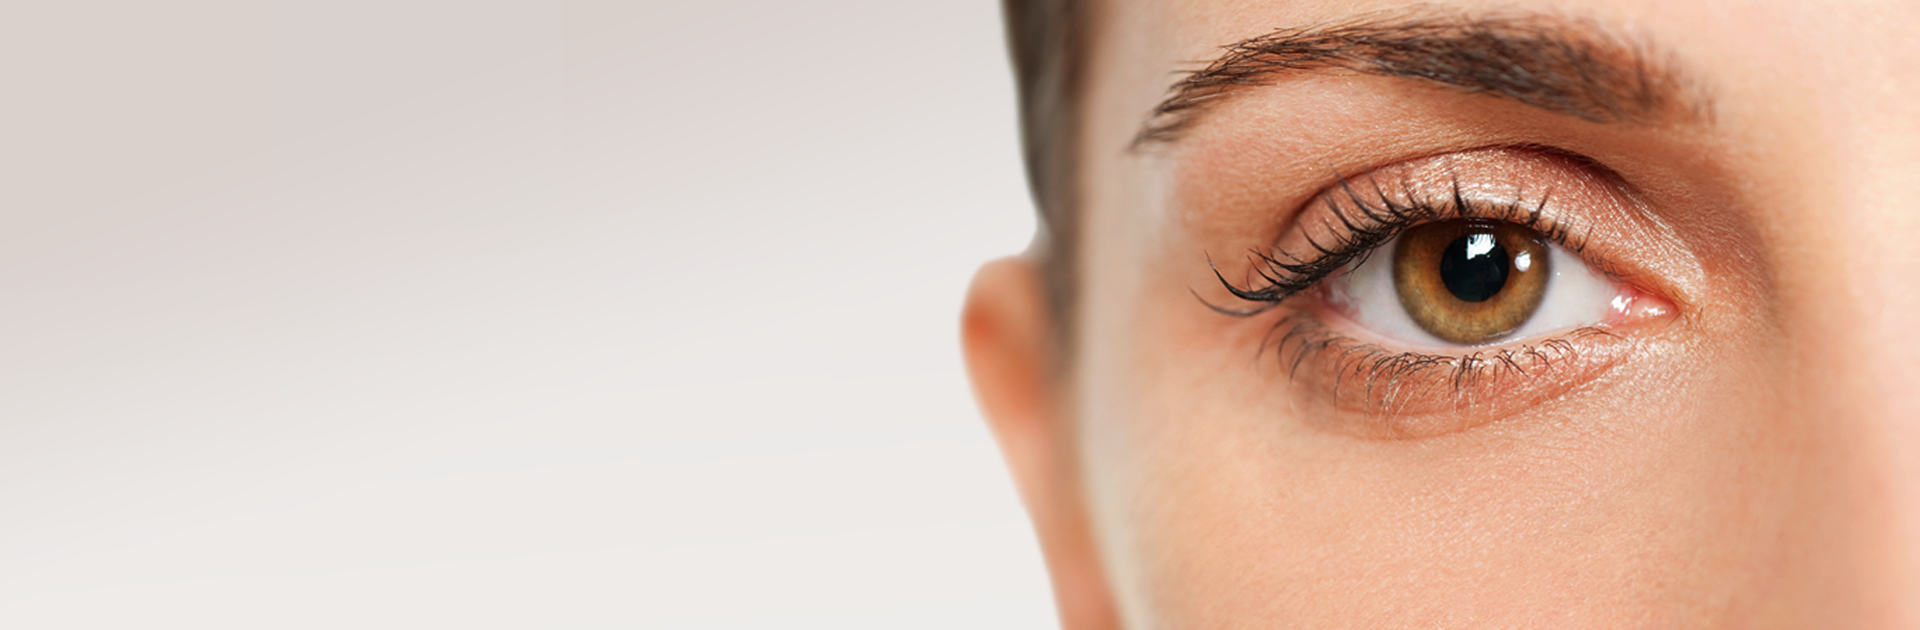 Пластическая операция глазных век – блефаропластика